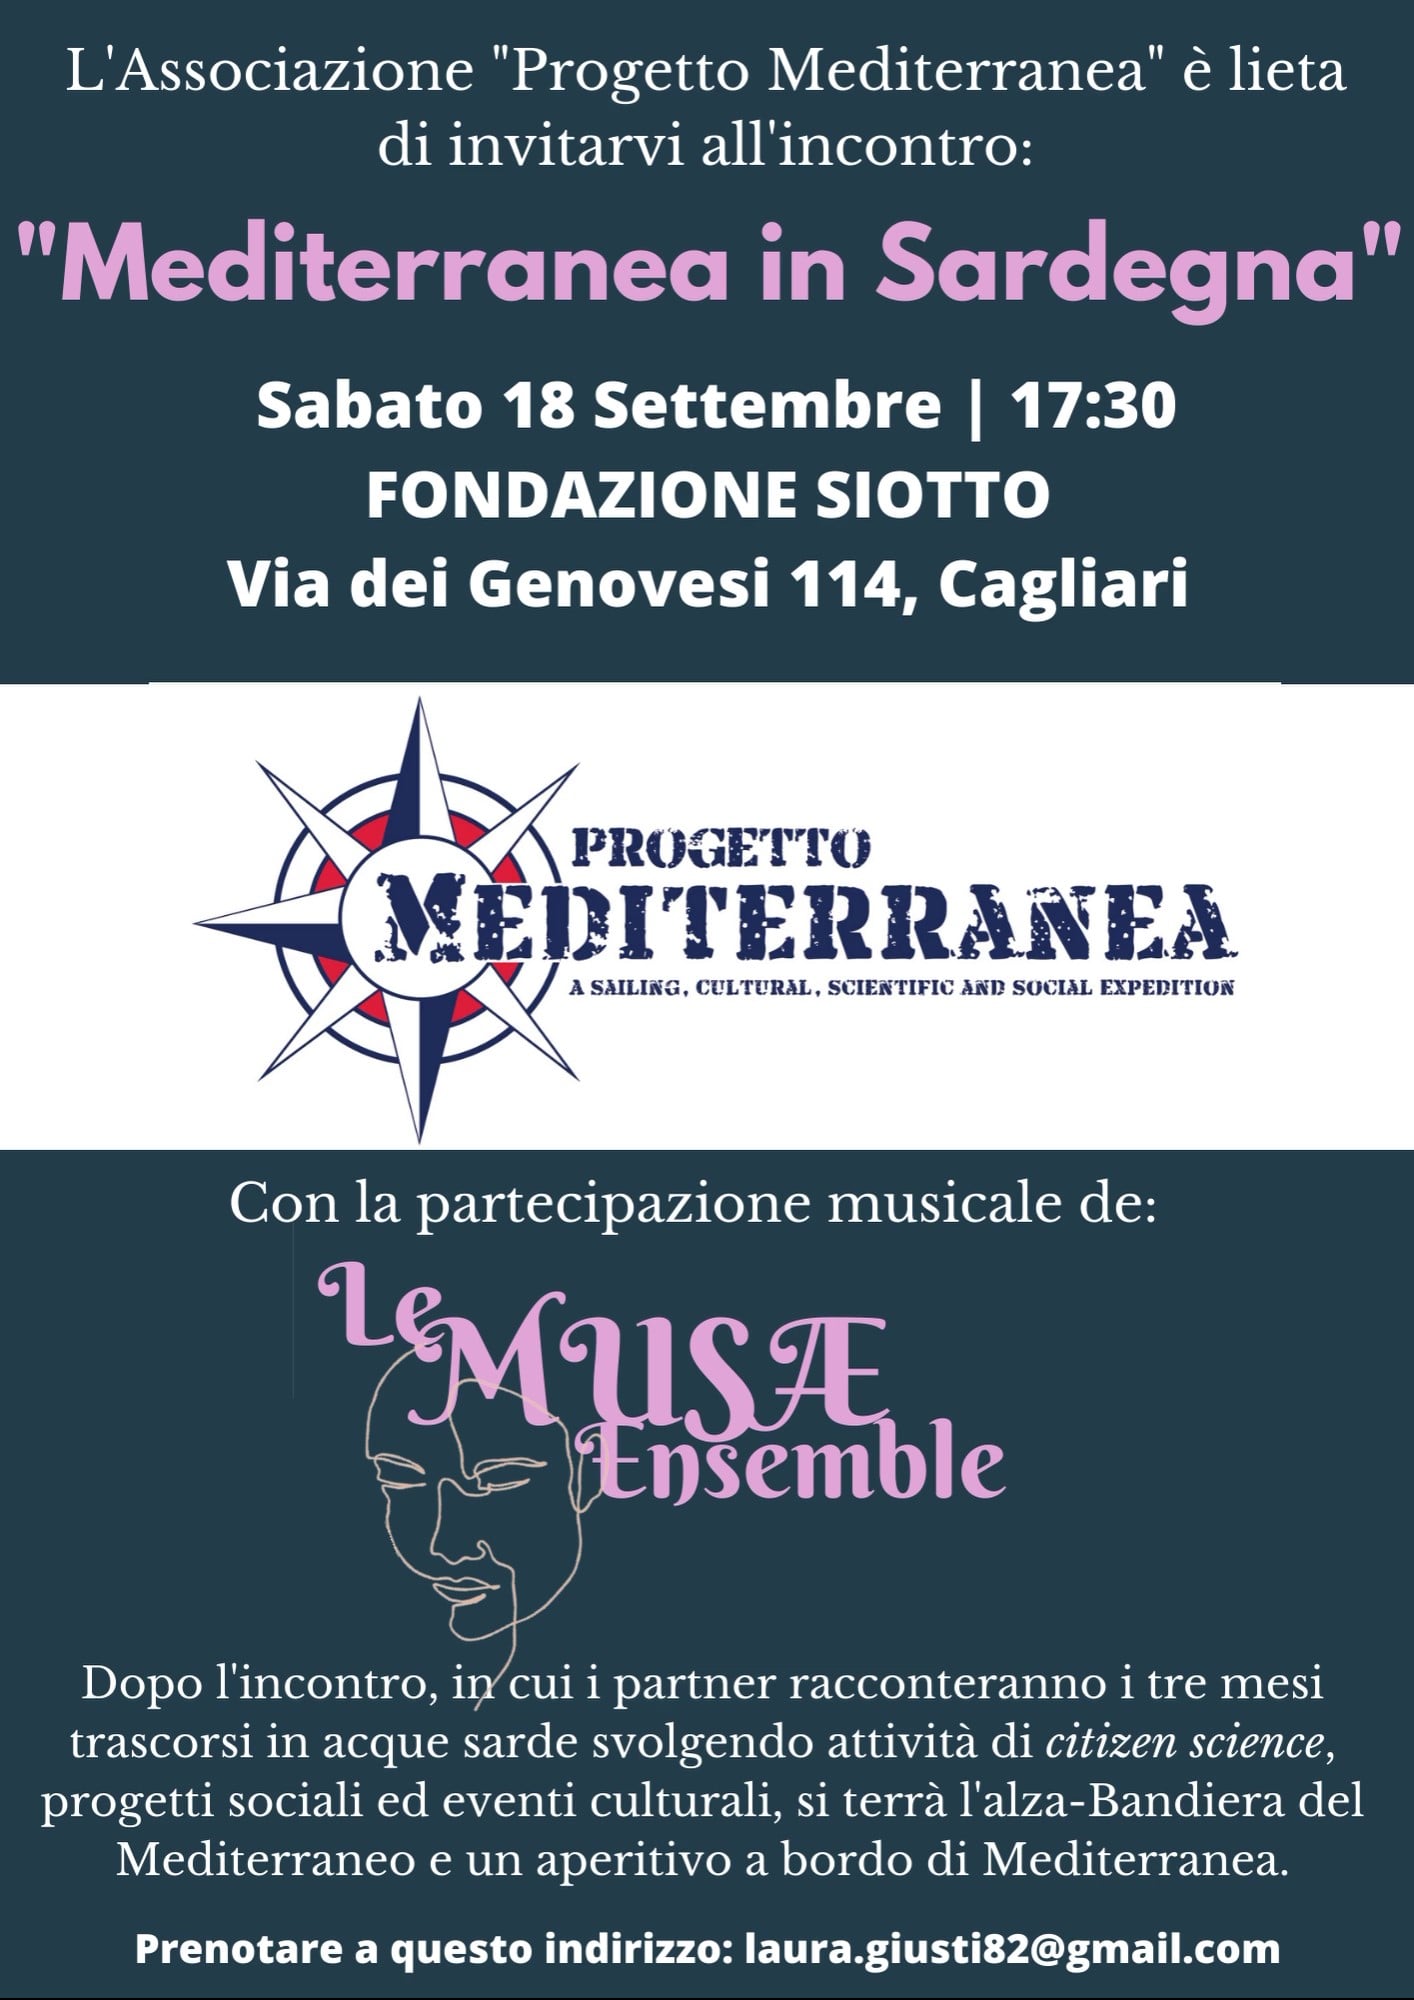 Poster for Progetto Mediterranea, Cagliari 2021